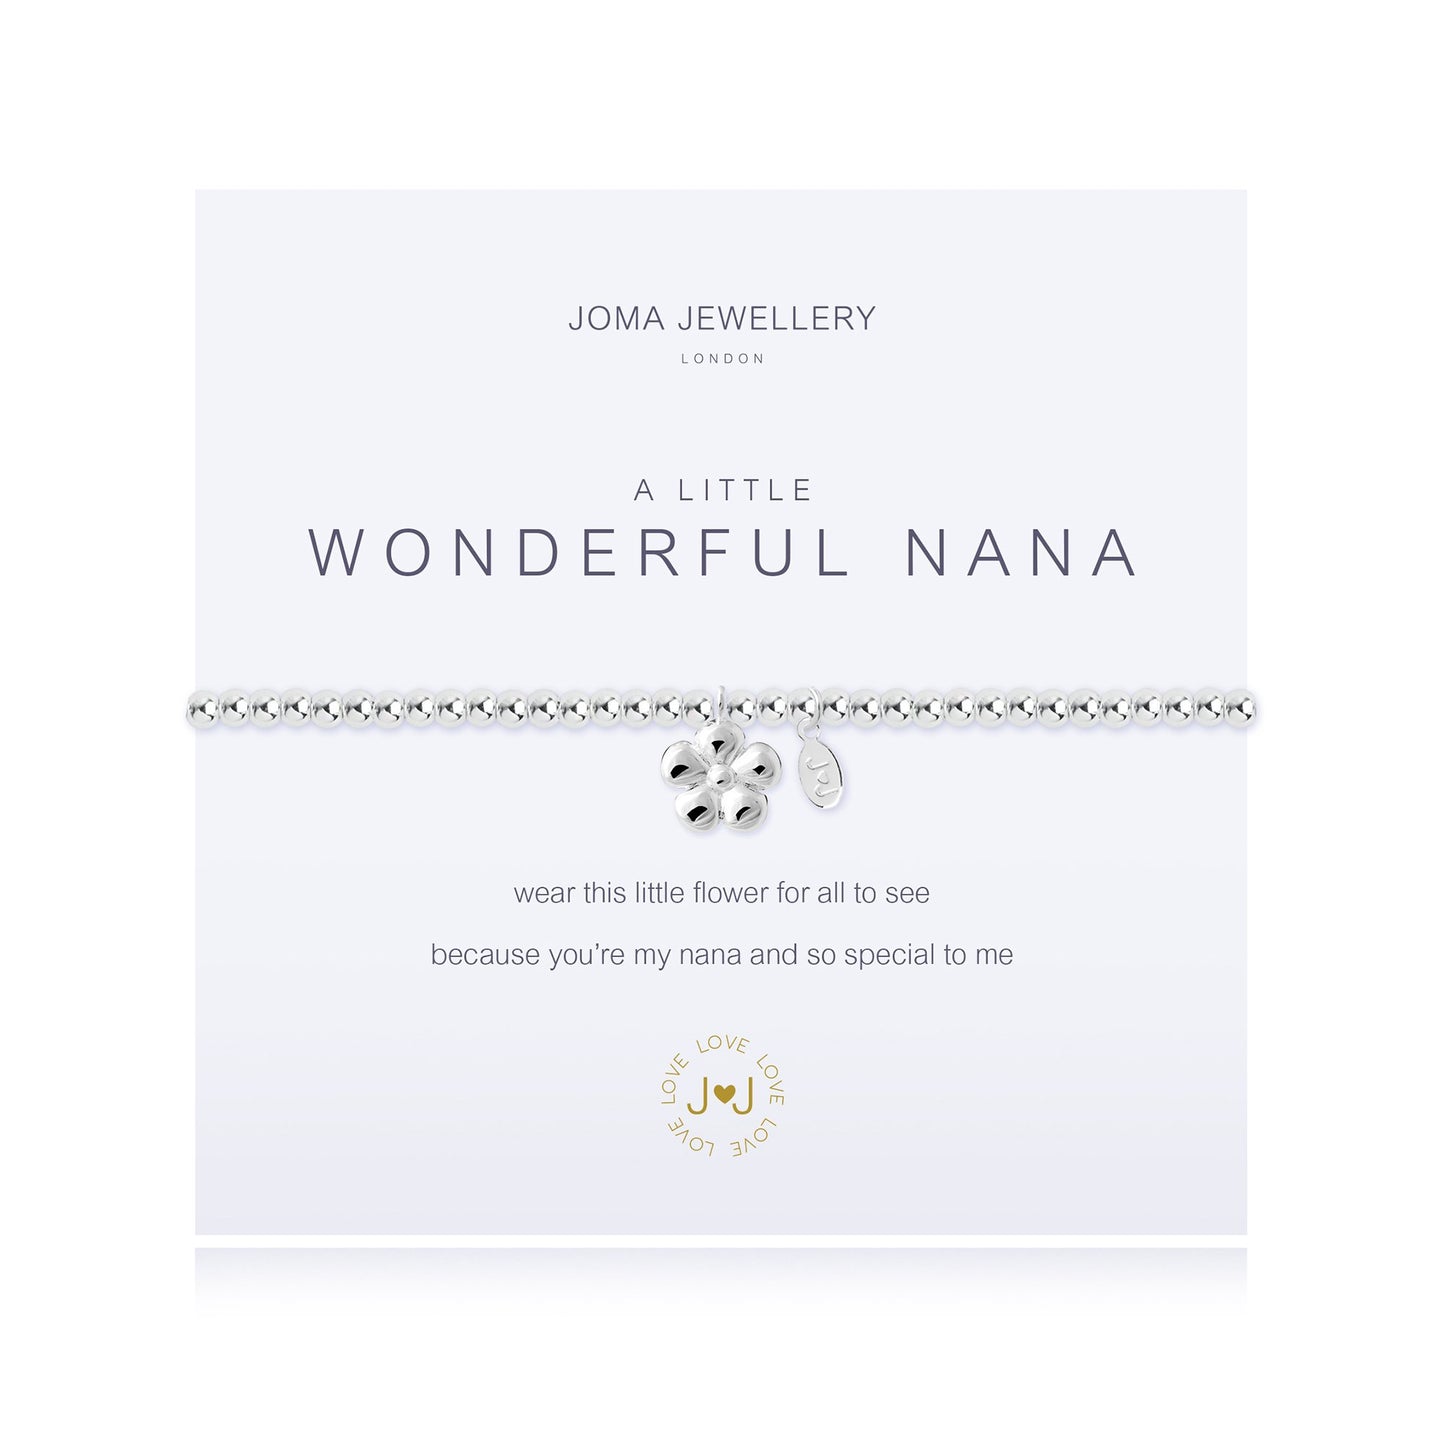 Joma Bracelet 2639 -  Wonderful Nana